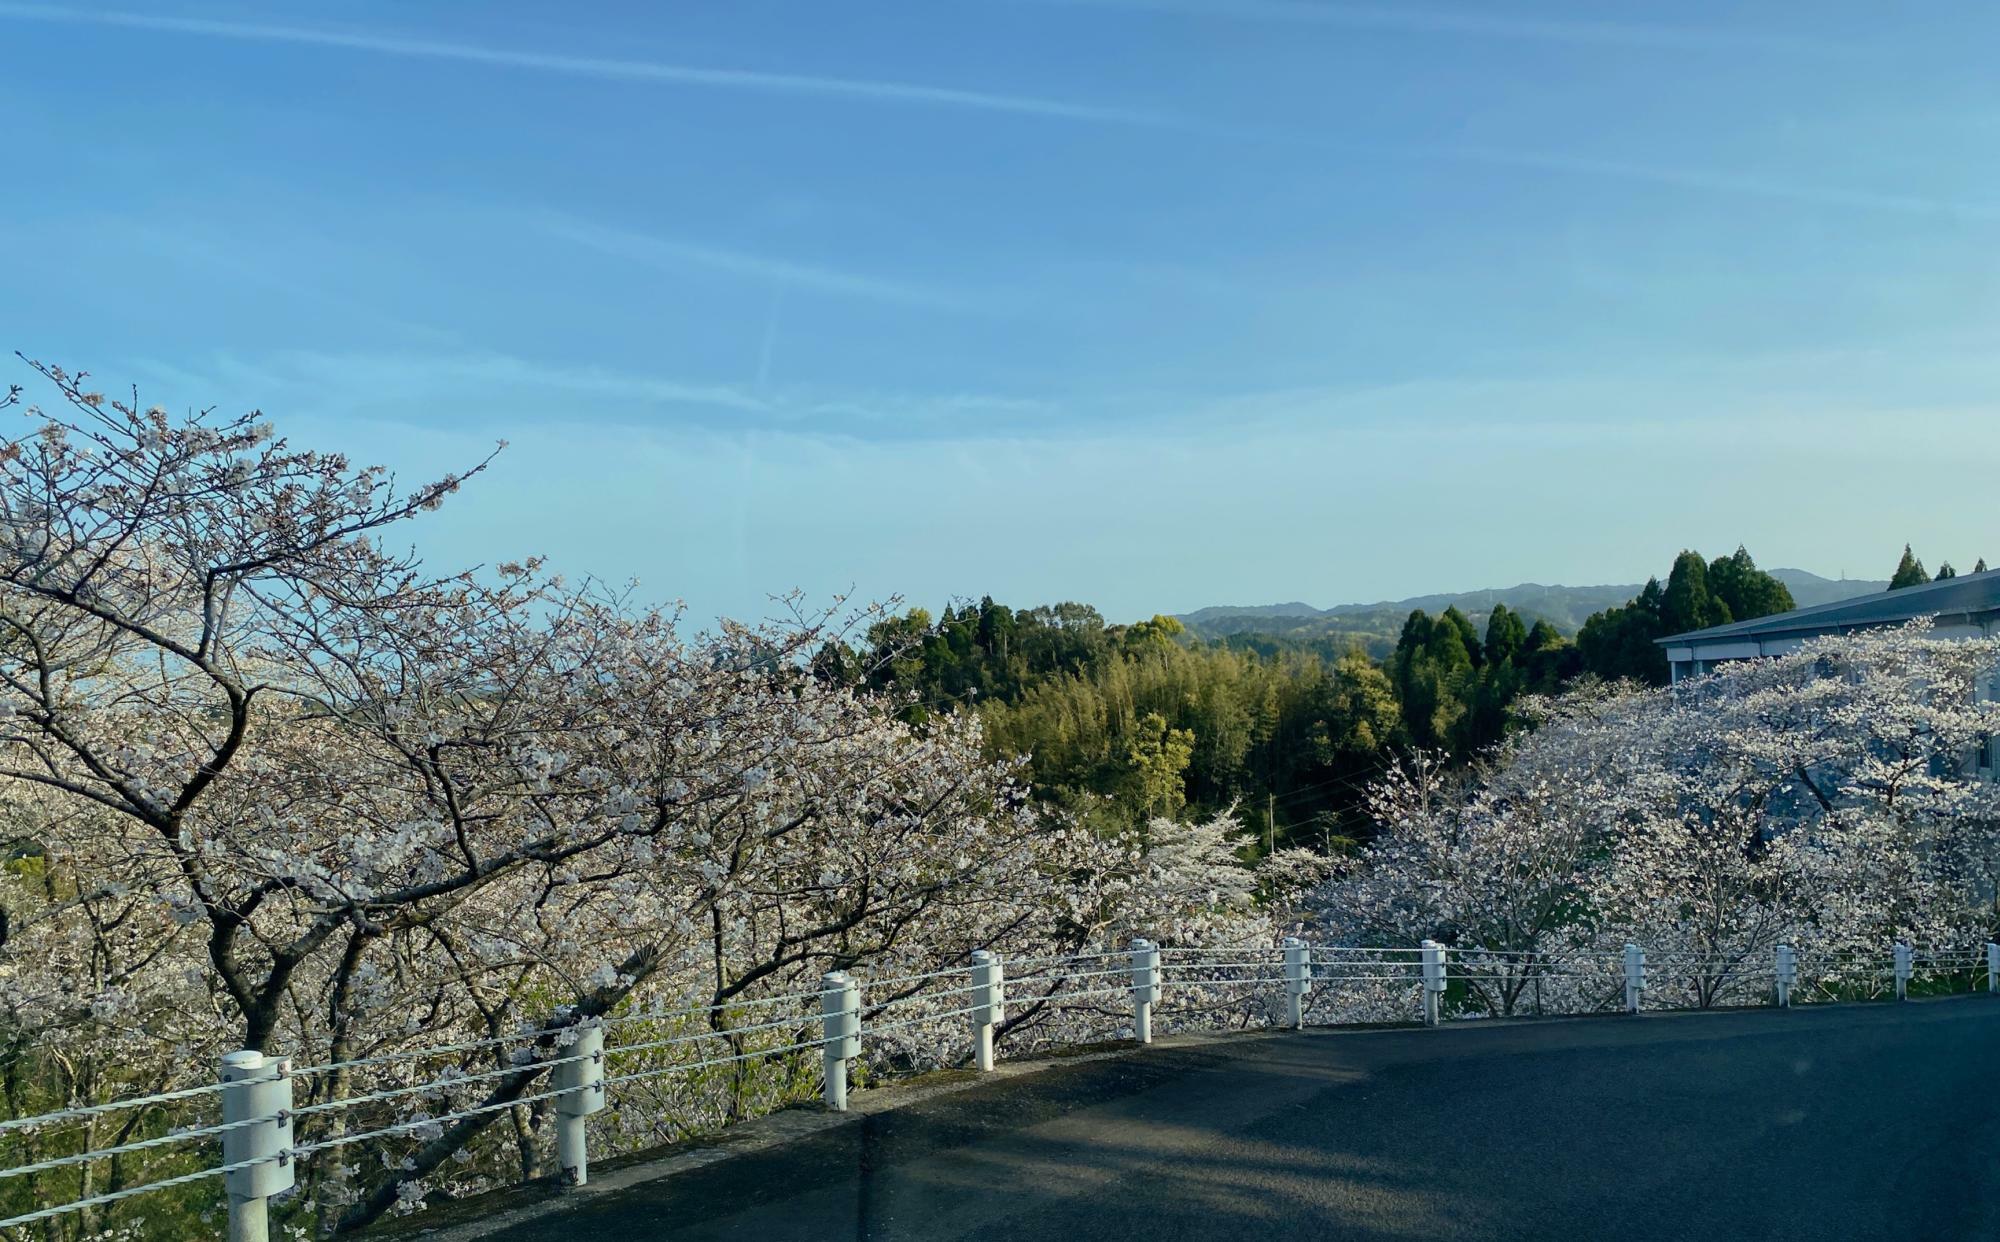 急勾配から見える桜の風景、素晴らしい眺めでした！